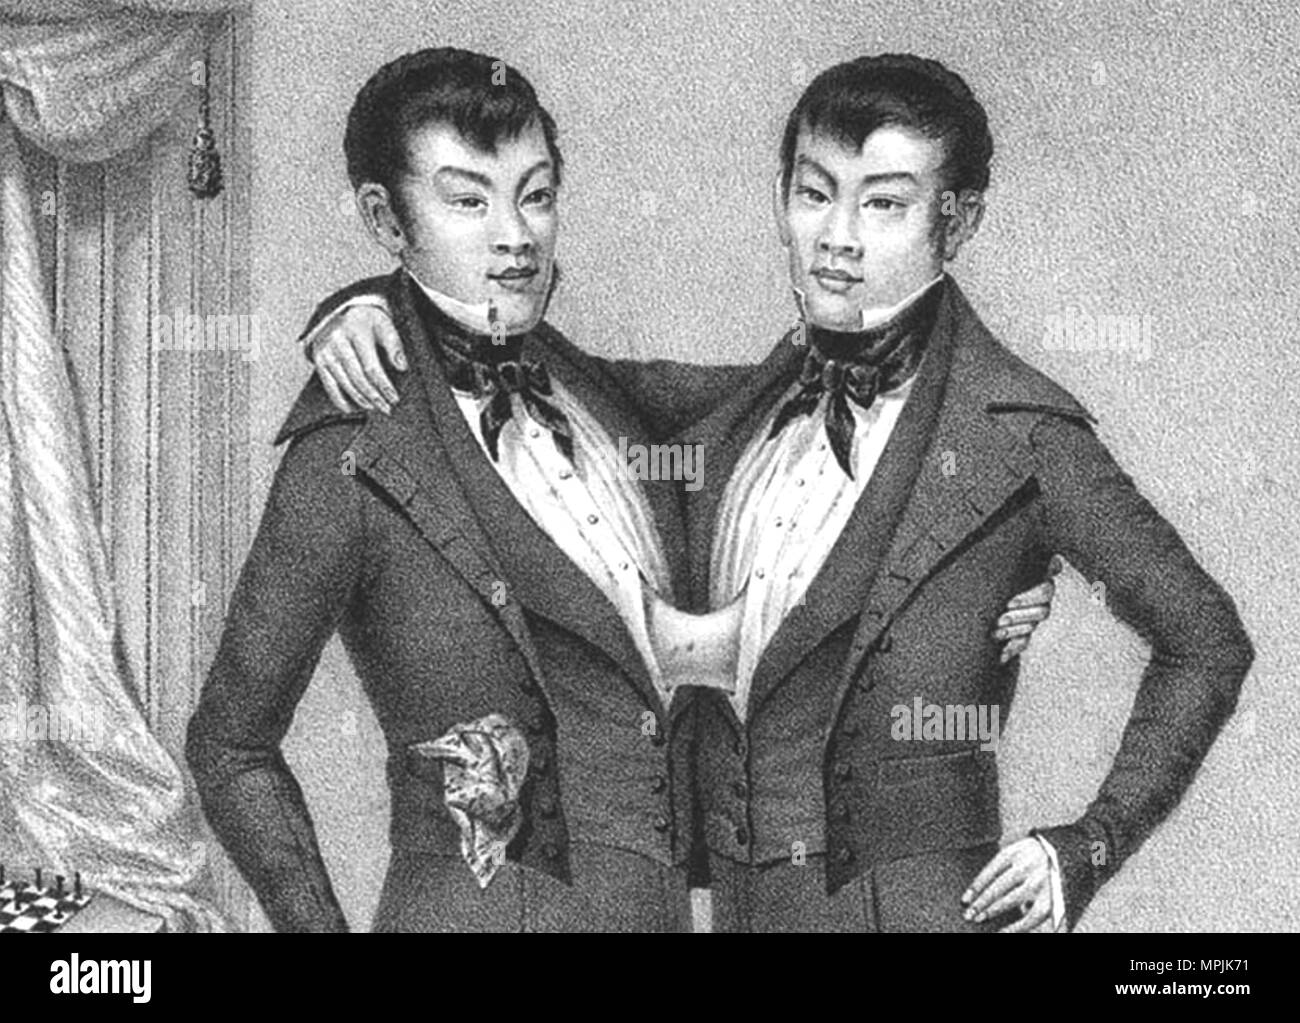 CHANG E ENG BUNKER (1811-1874) Thai-American gemelli fratelli la cui condizione e luogo di nascita ha coniato il termine "iamese gemelli". Chang è a destra in questa litografia promozionali circa 1835. Foto Stock